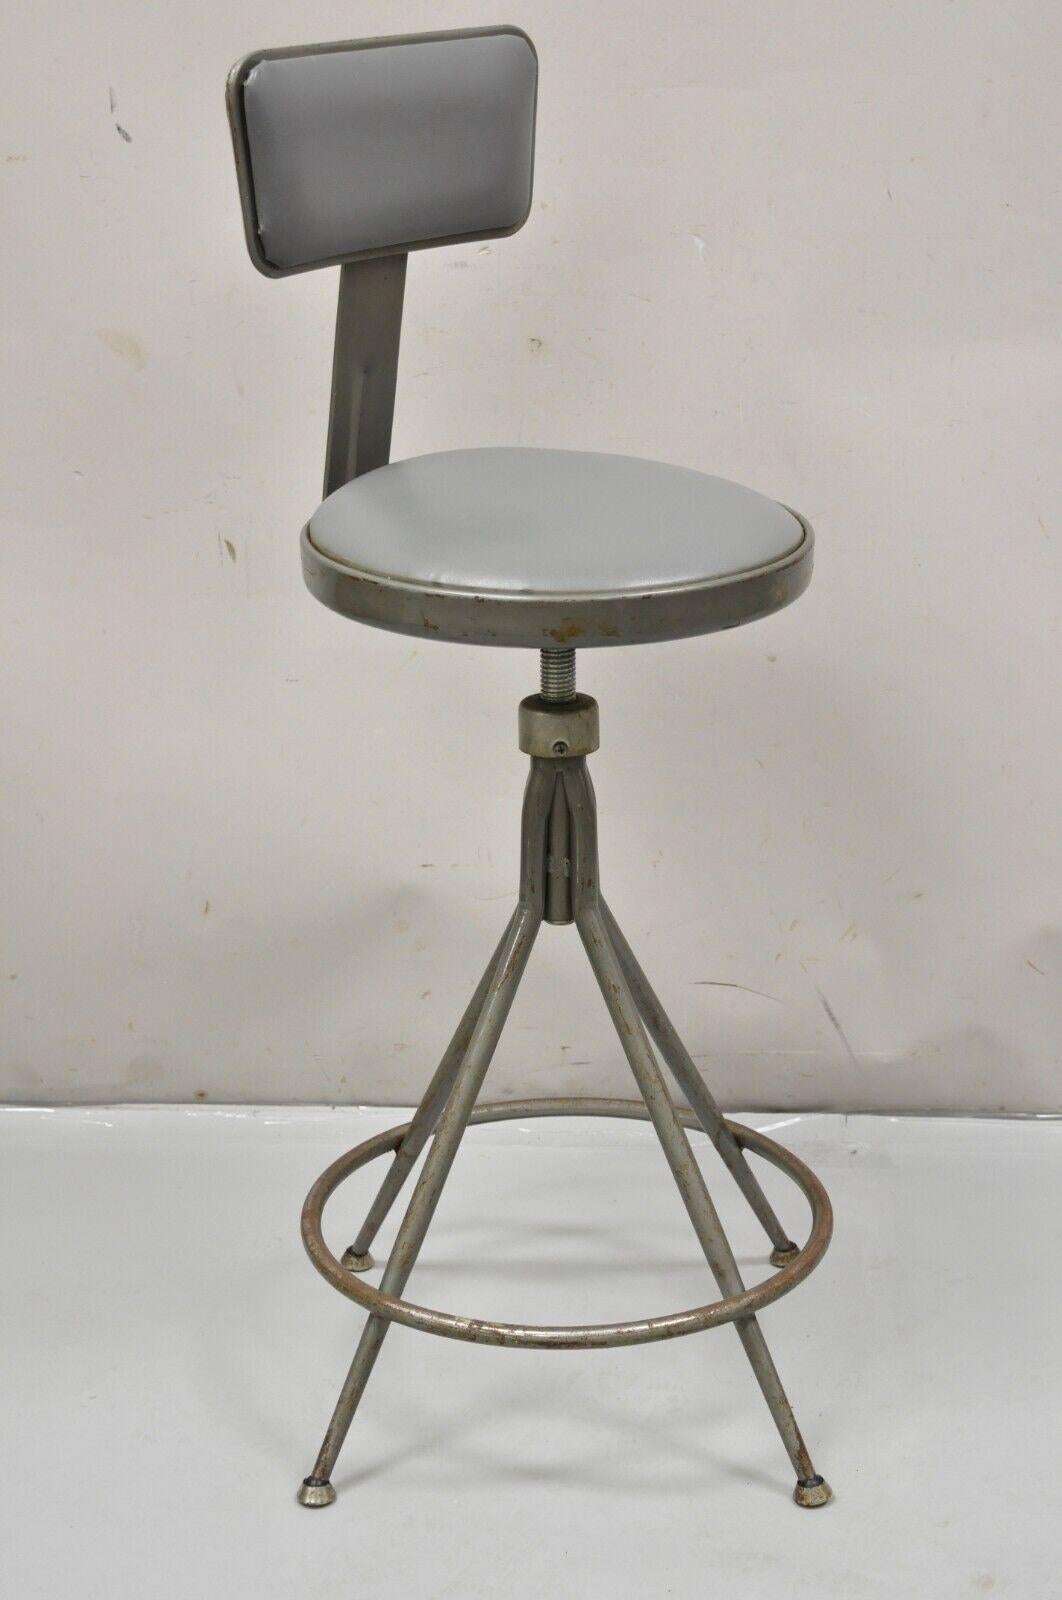 Vintage Industrial Gray Steel Metal Adjustable Drafting Stool Work Chair. Item features Mid 20th Century. Measurements: 40